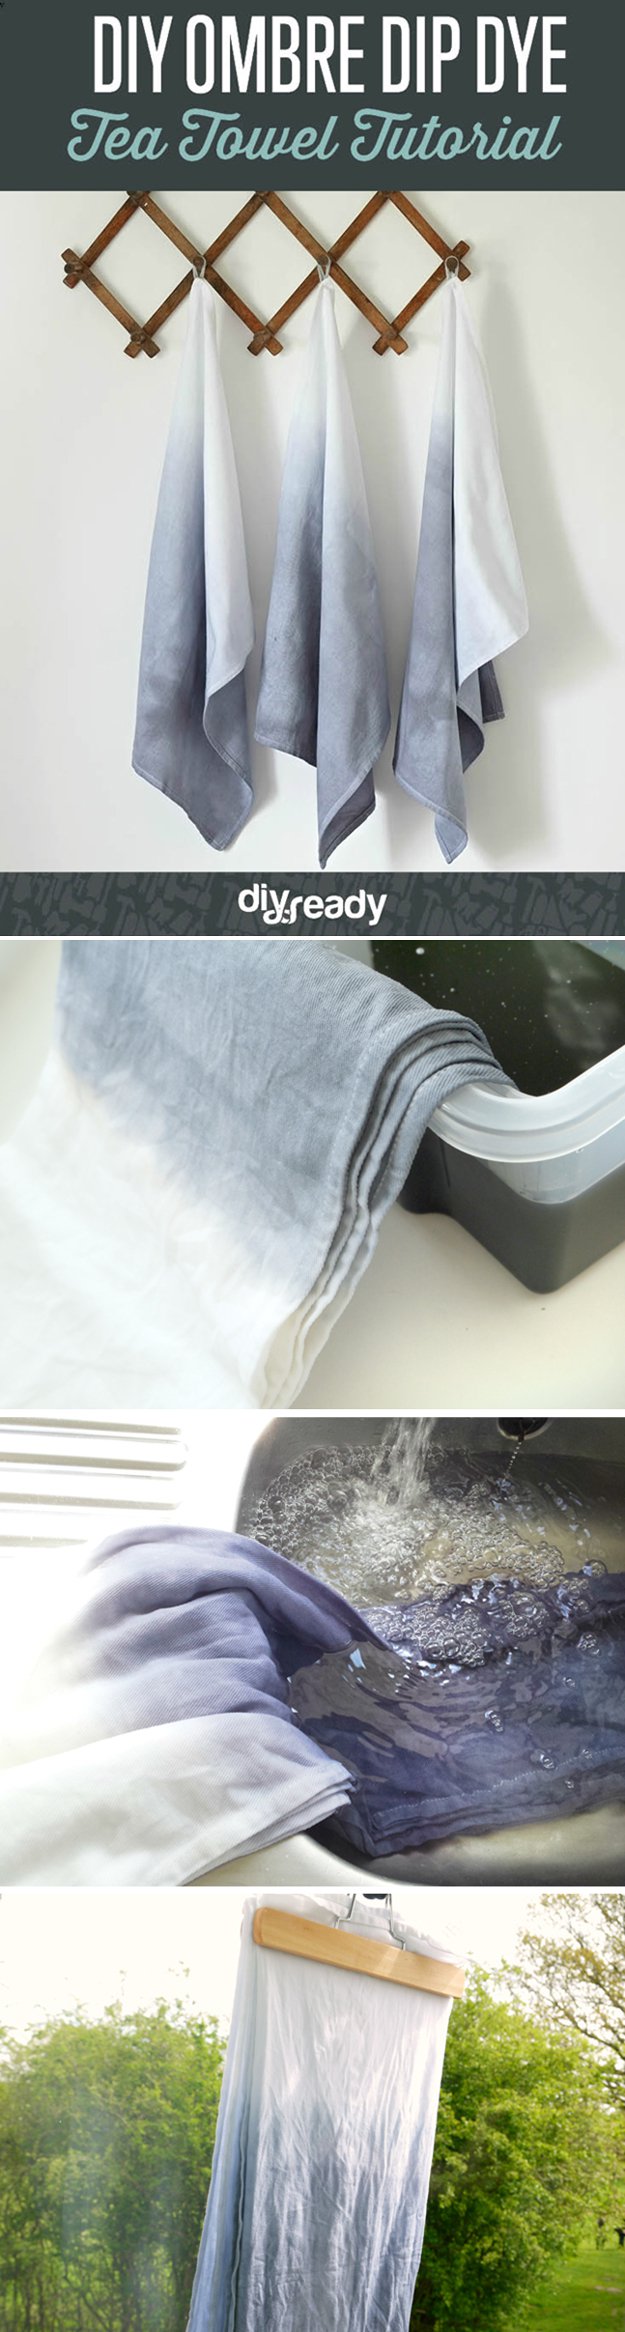 Diy Bathroom Decorating Ideas,Best Dishwasher Rinse Aid